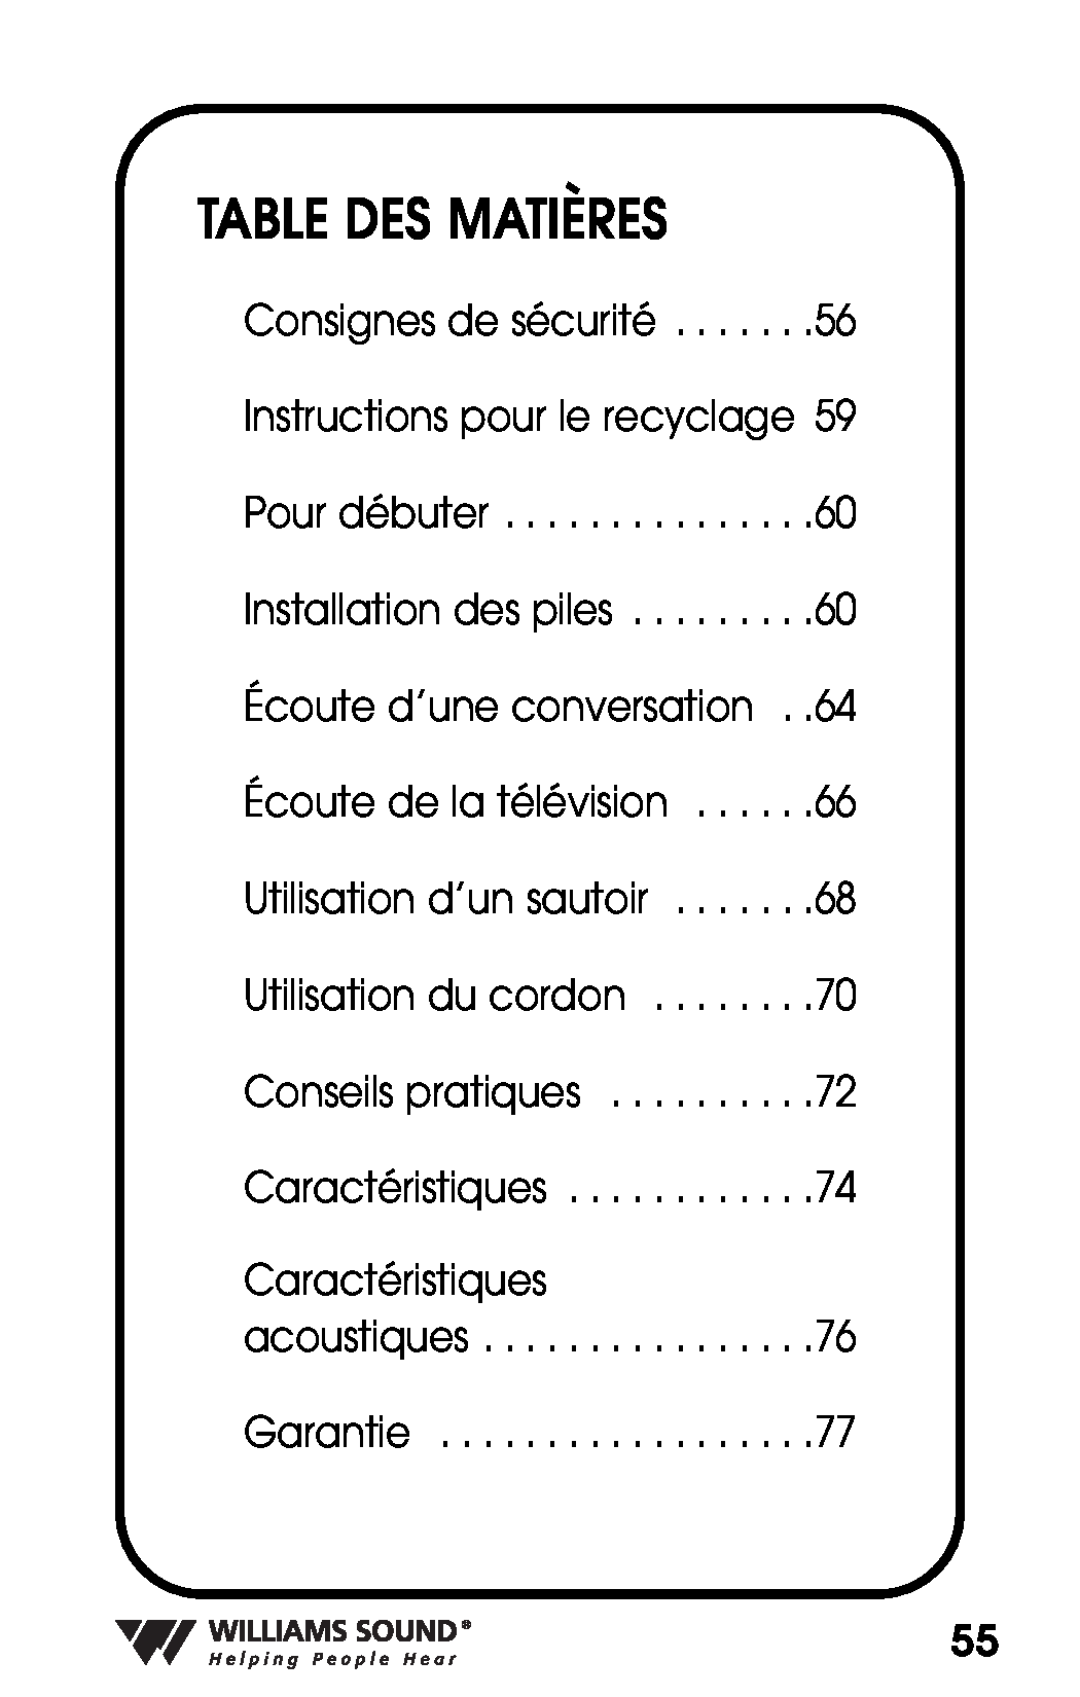 Williams Sound PKT D1 manual Table Des Matières, Caractéristiques 